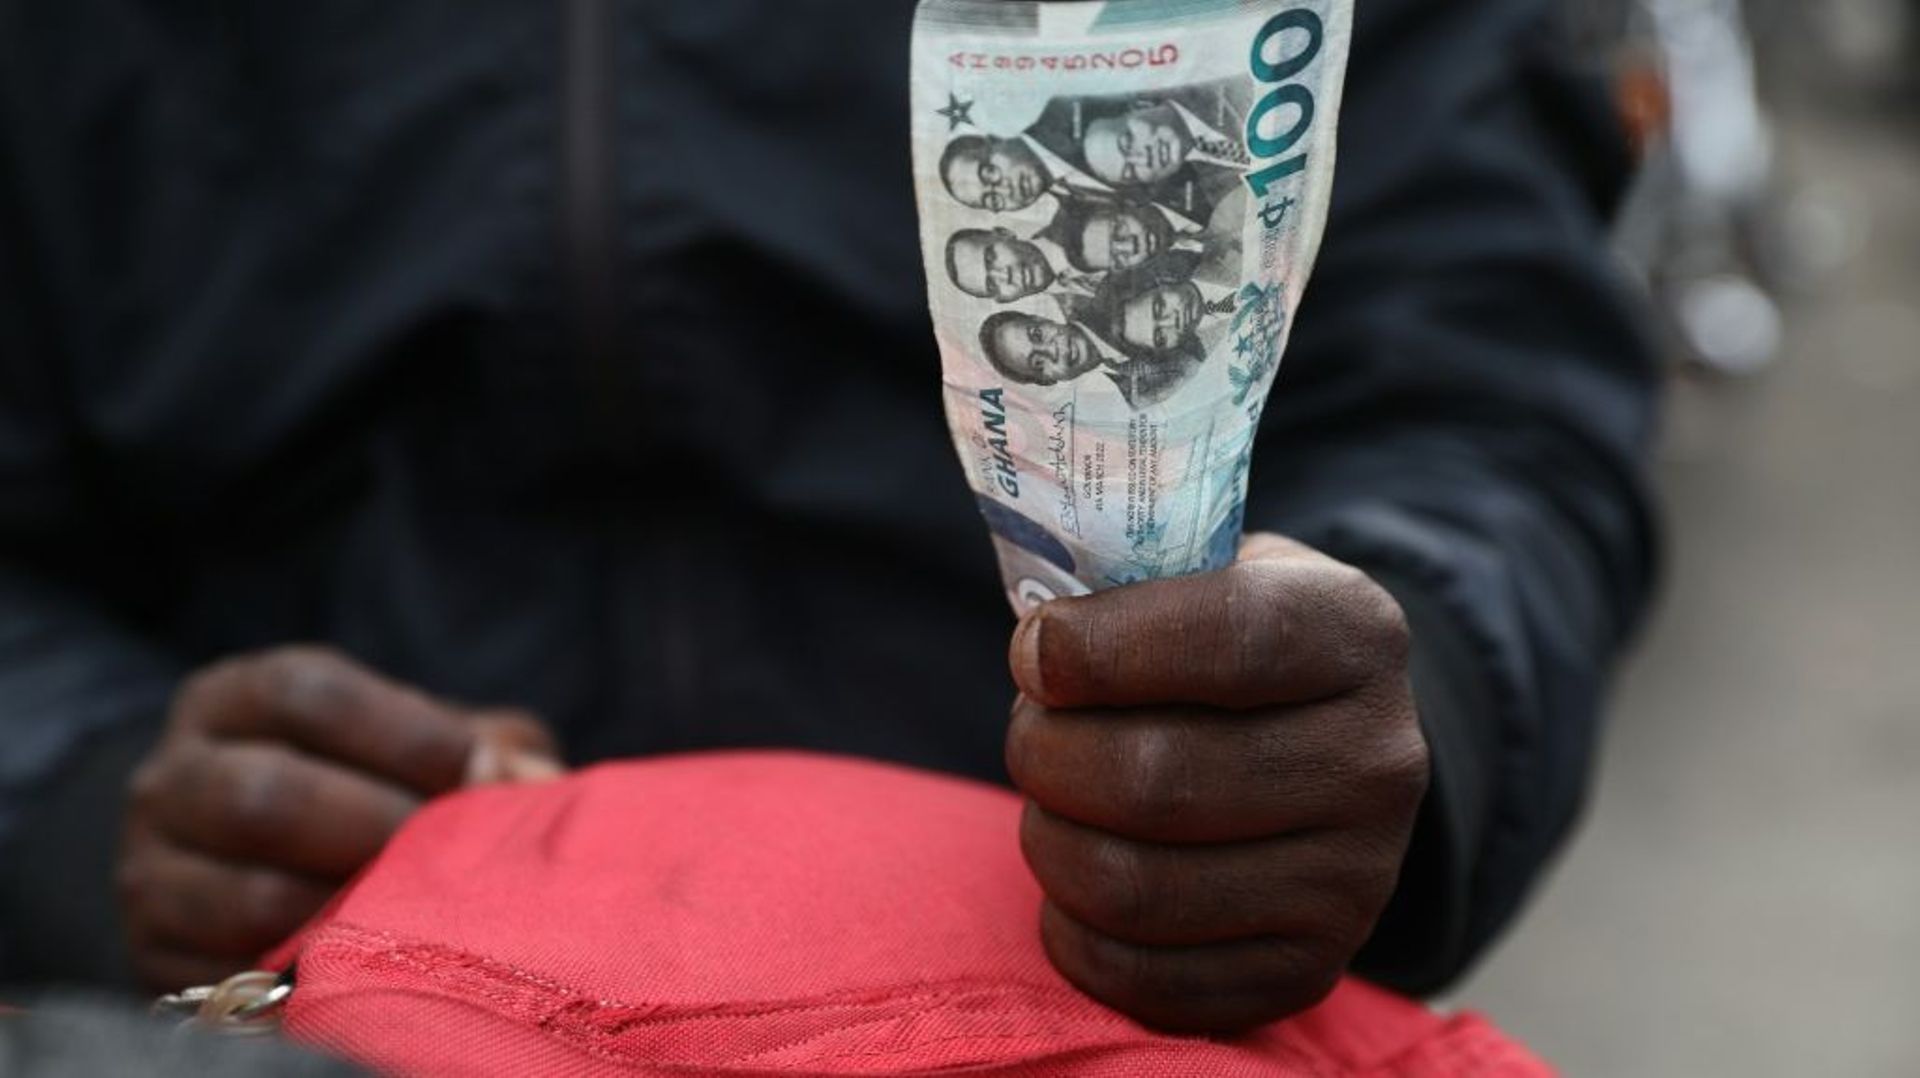 Le Ghana a annoncé lundi la suspension "provisoire" du paiement d’une partie de sa dette extérieure, dont les eurobonds, au moment où il cherche à la restructurer après un accord passé avec le Fonds monétaire international (FMI) la semaine dernière